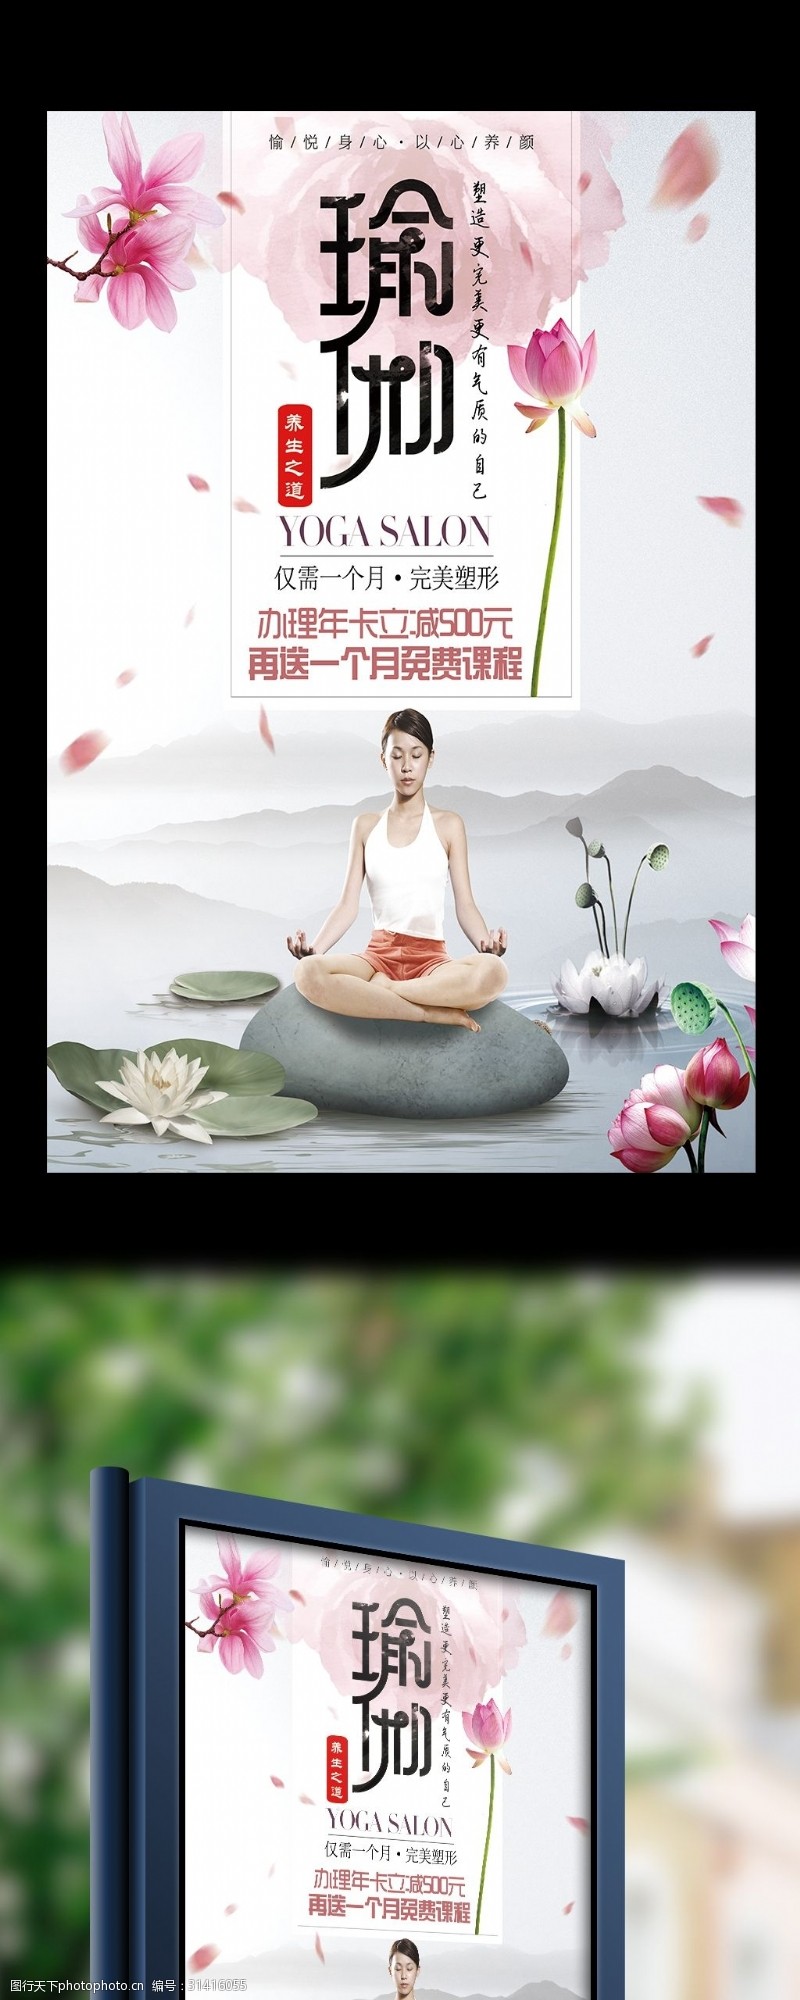 招生易拉宝2017瑜伽宣传海报设计